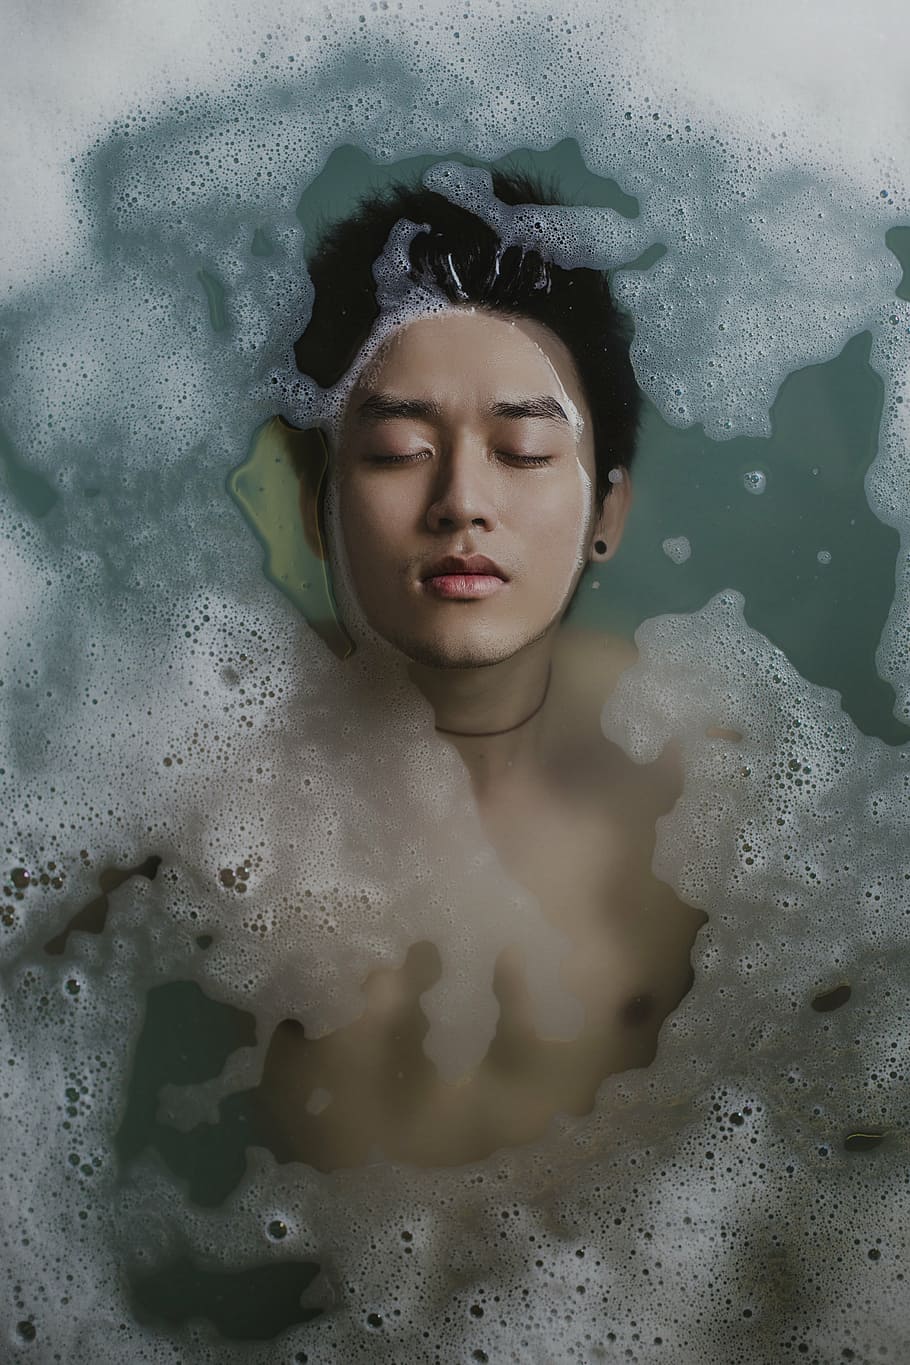 man face, bathing, person, water, foam, soap, boy, relaxing, hygiene